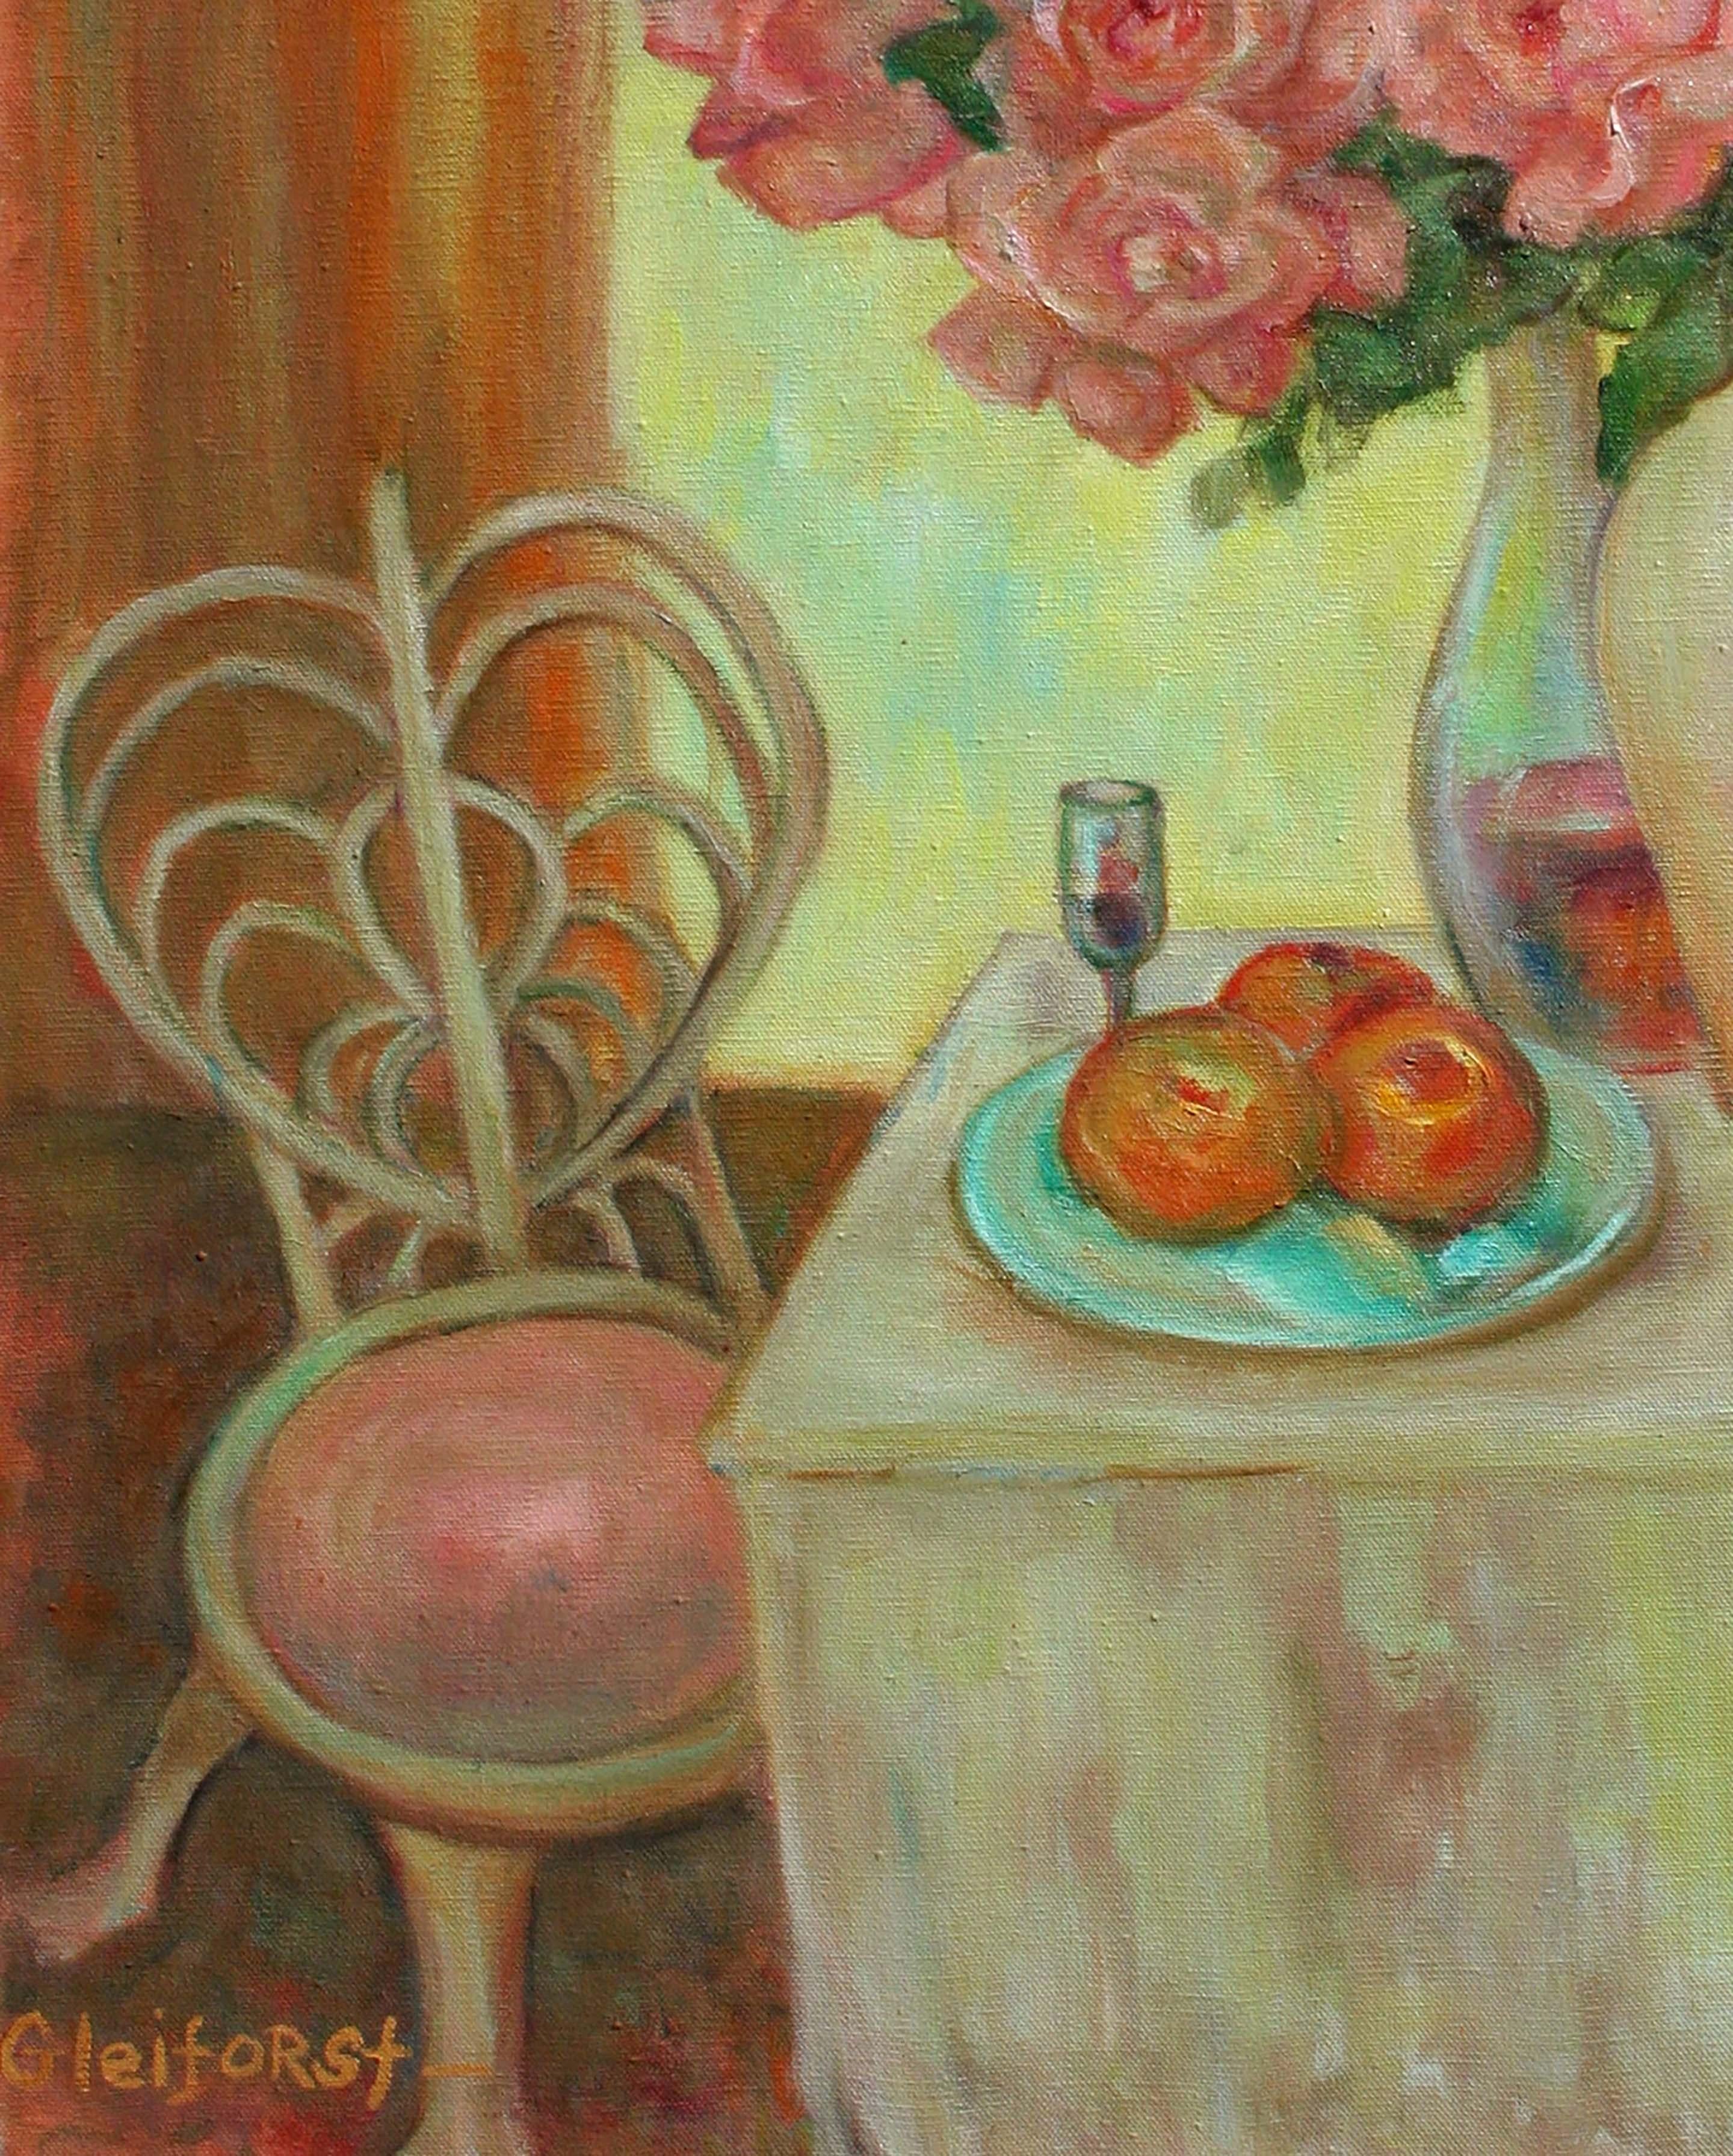 Charmante et chaleureuse nature morte d'un vase débordant de fleurs sur une table avec un plat de pommes, une carafe de vin et un petit cadre à côté d'une chaise rose ancienne, par l'artiste californienne Helen Enoch Gleiforst (américaine,